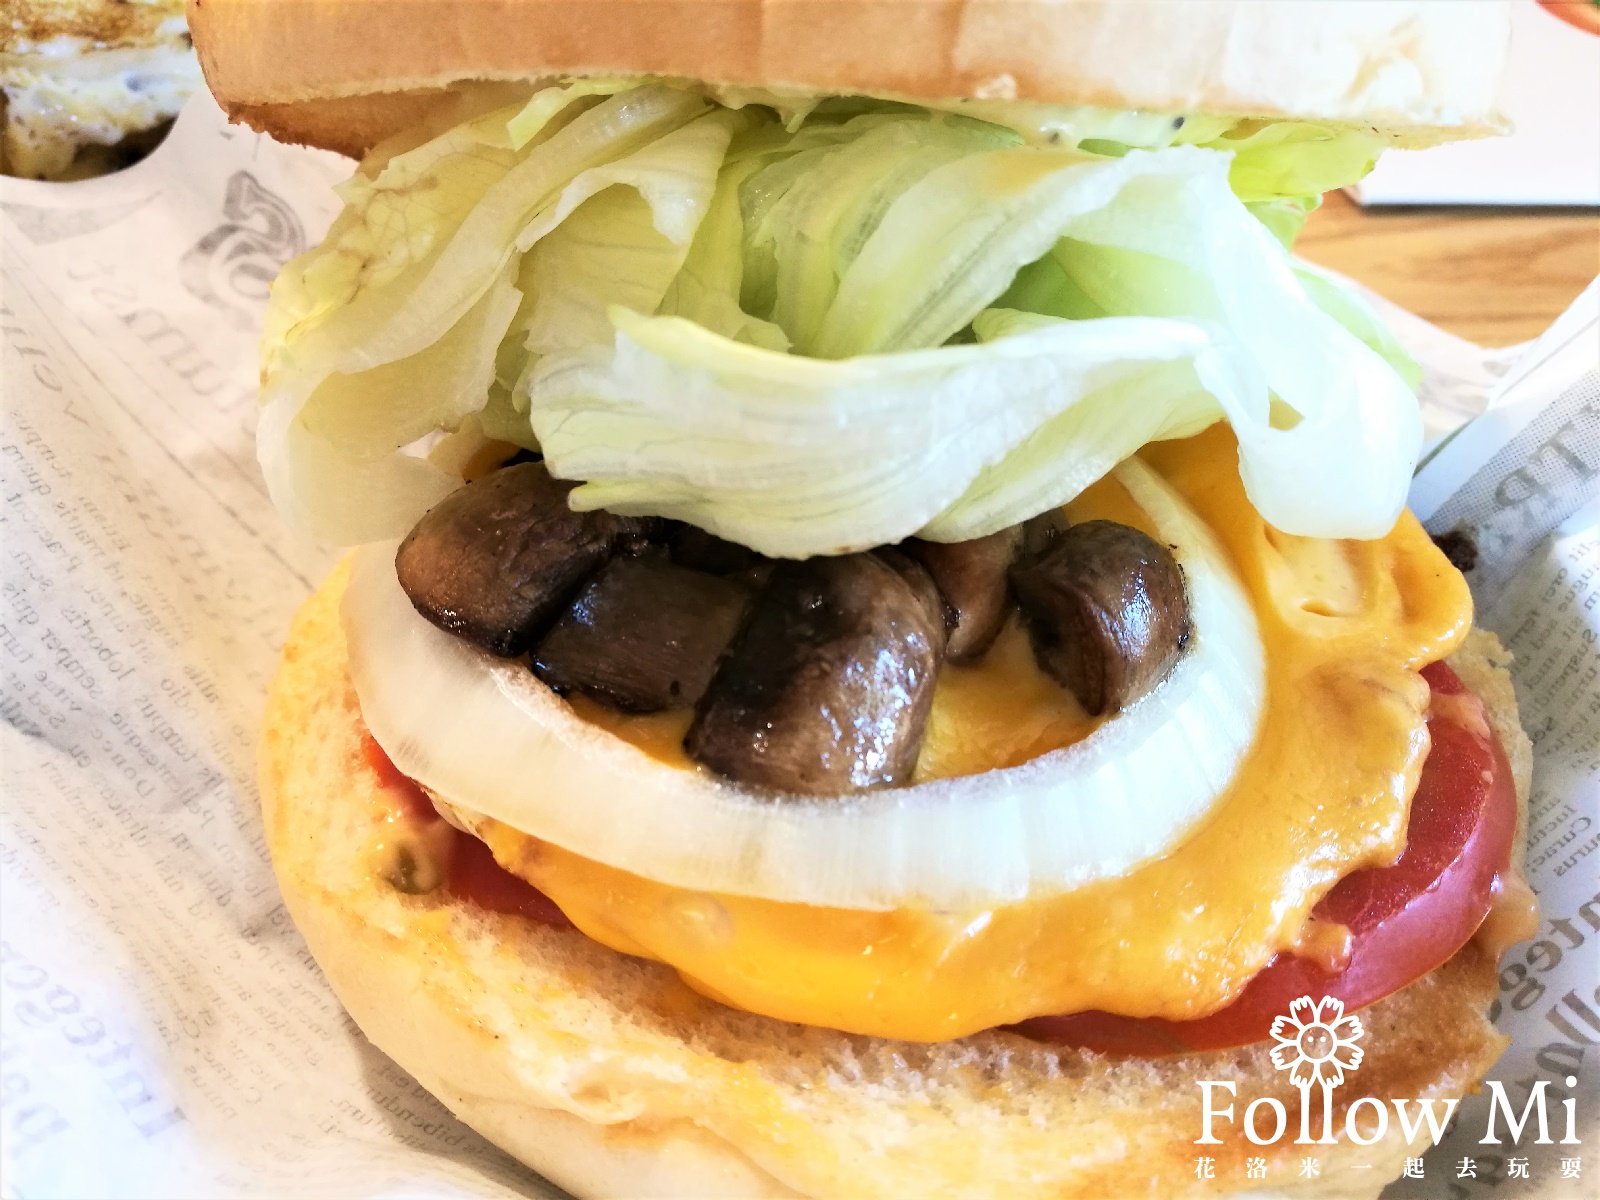 JB burger,台北美食,大安區,青田街